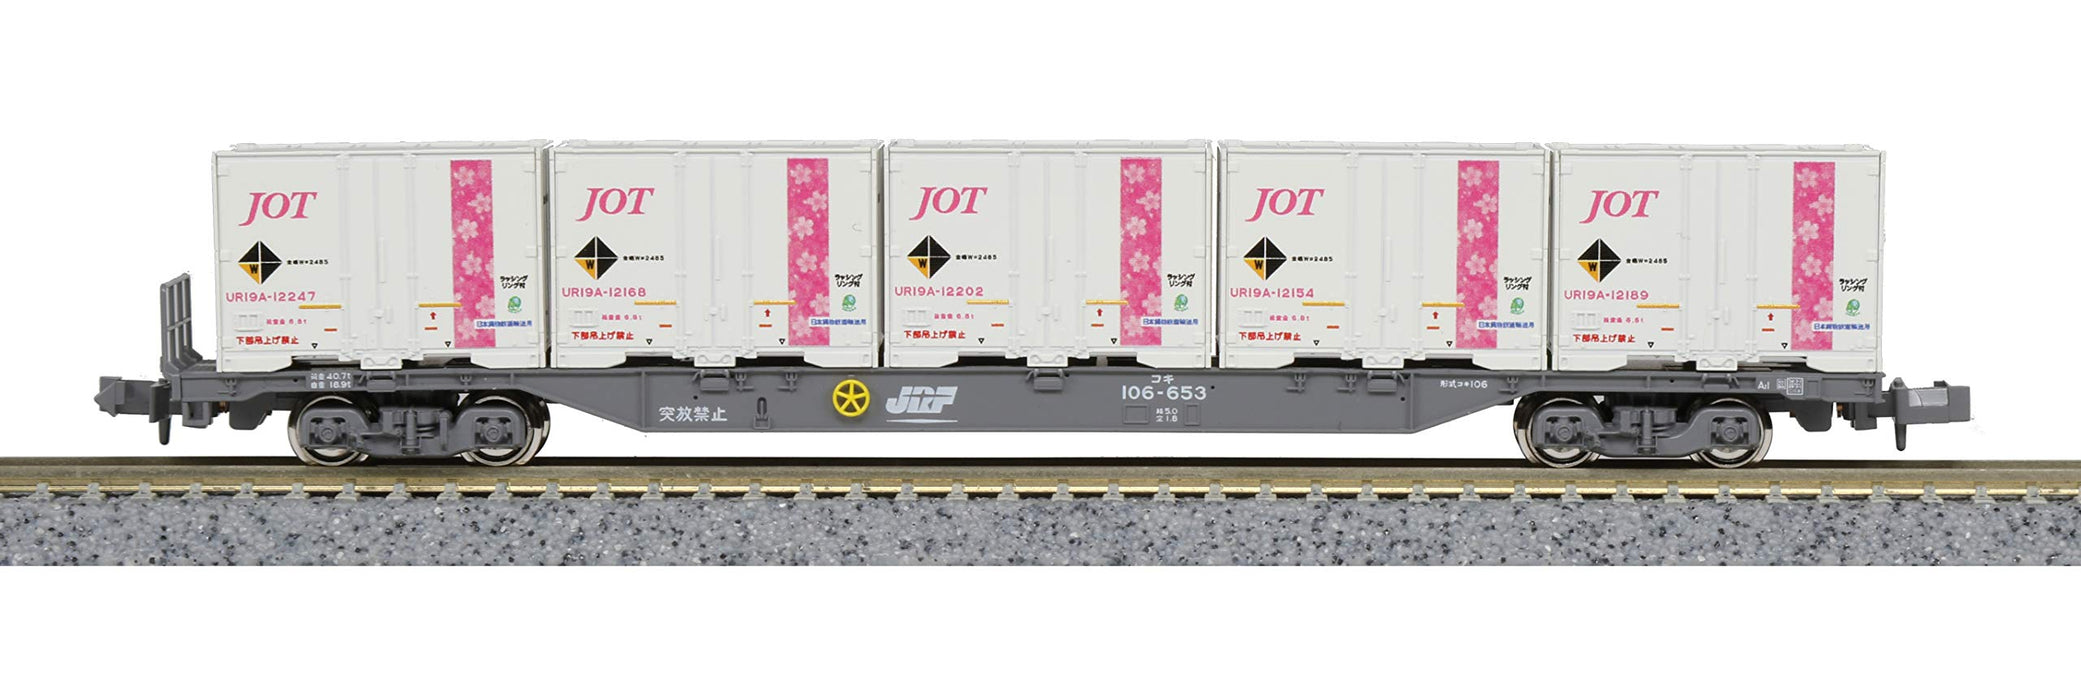 Kato N Gauge 5 pièces Ur19A conteneur ferroviaire modèle Nippon Oil &amp; Sakura Obi